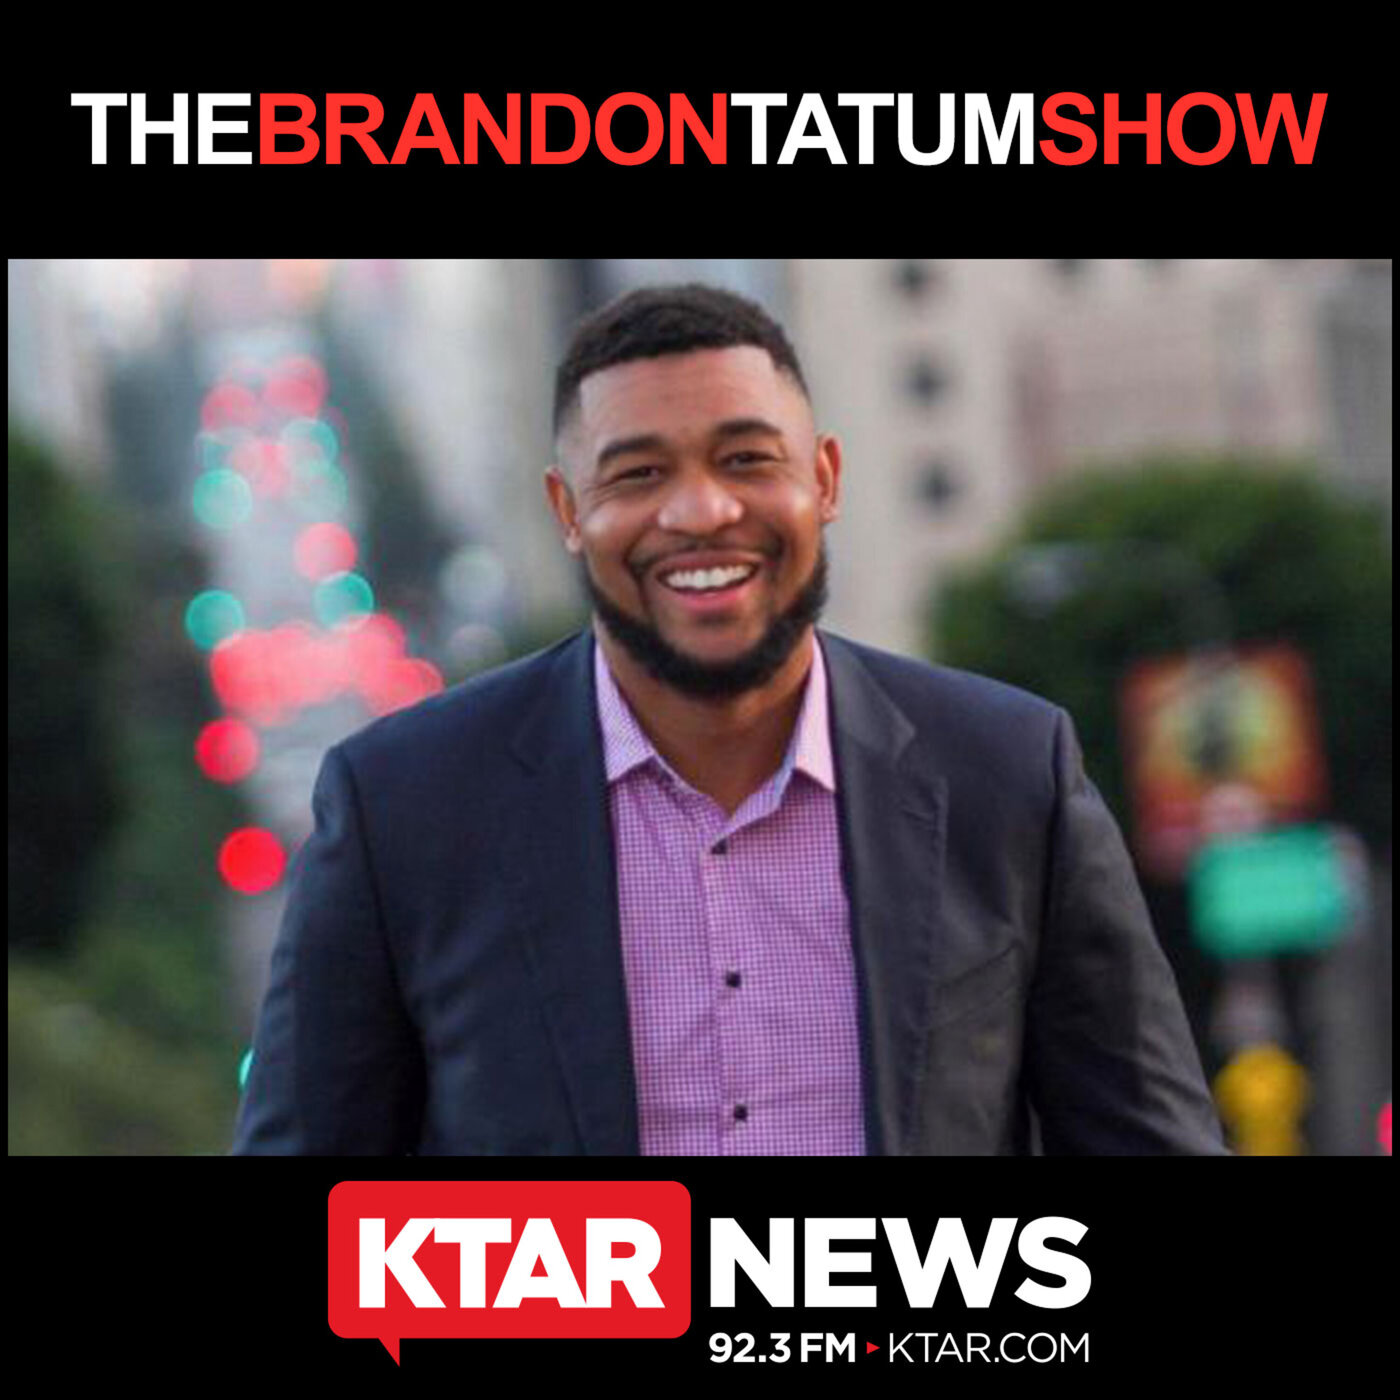 April 11, 2020 - The Brandon Tatum Show